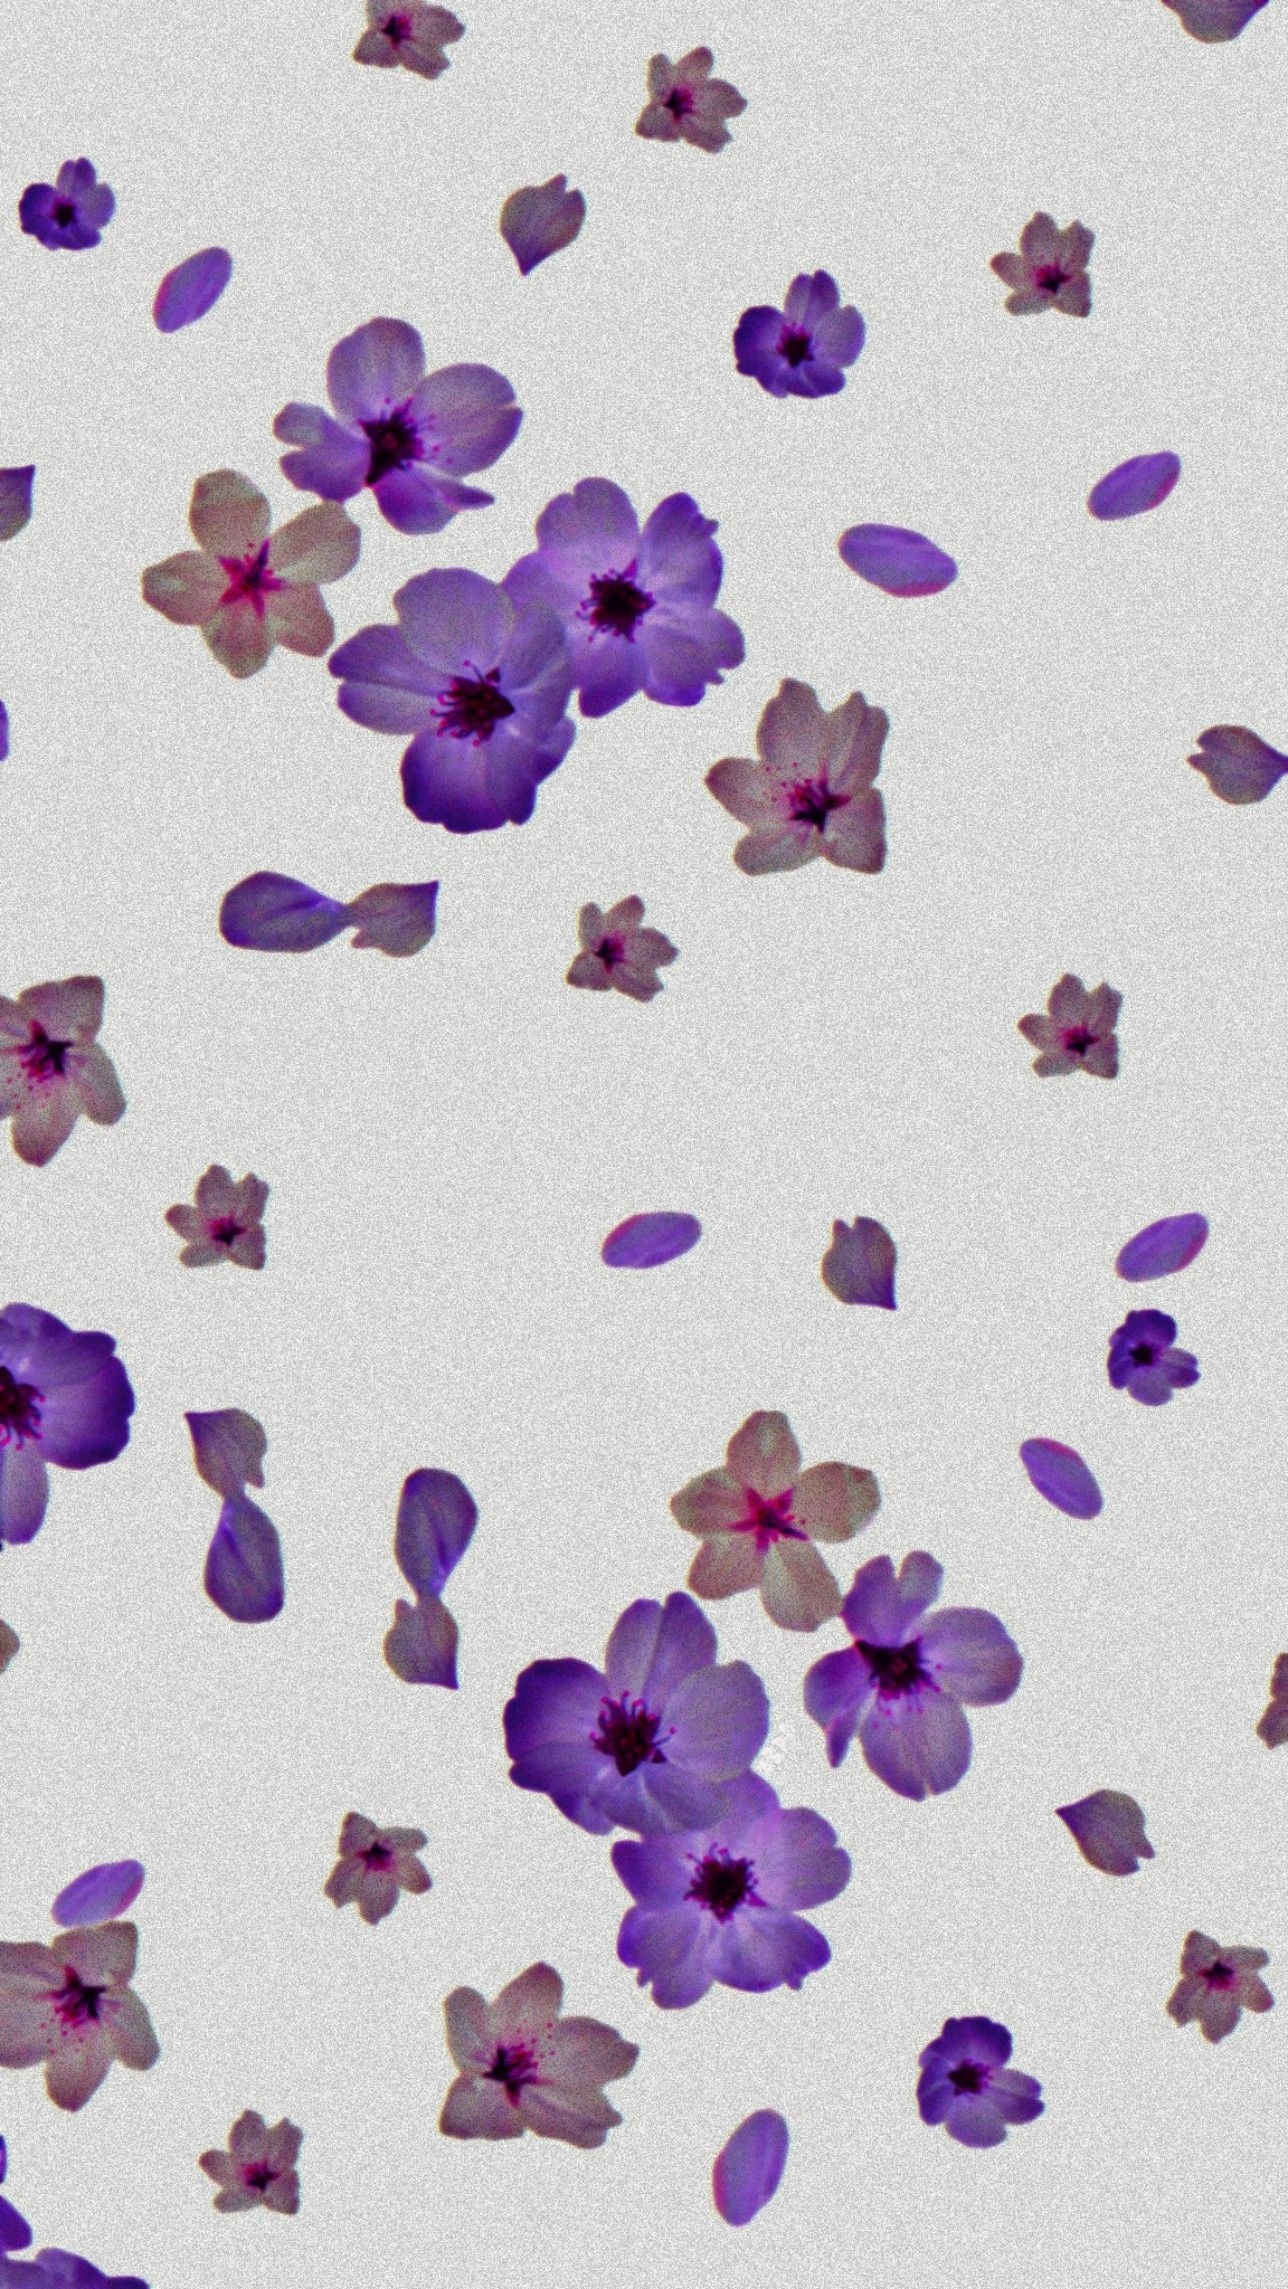 1288x2289 purple flowers wallpaper | Flower wallpaper, Purple flowers wallpaper, Purple flowers